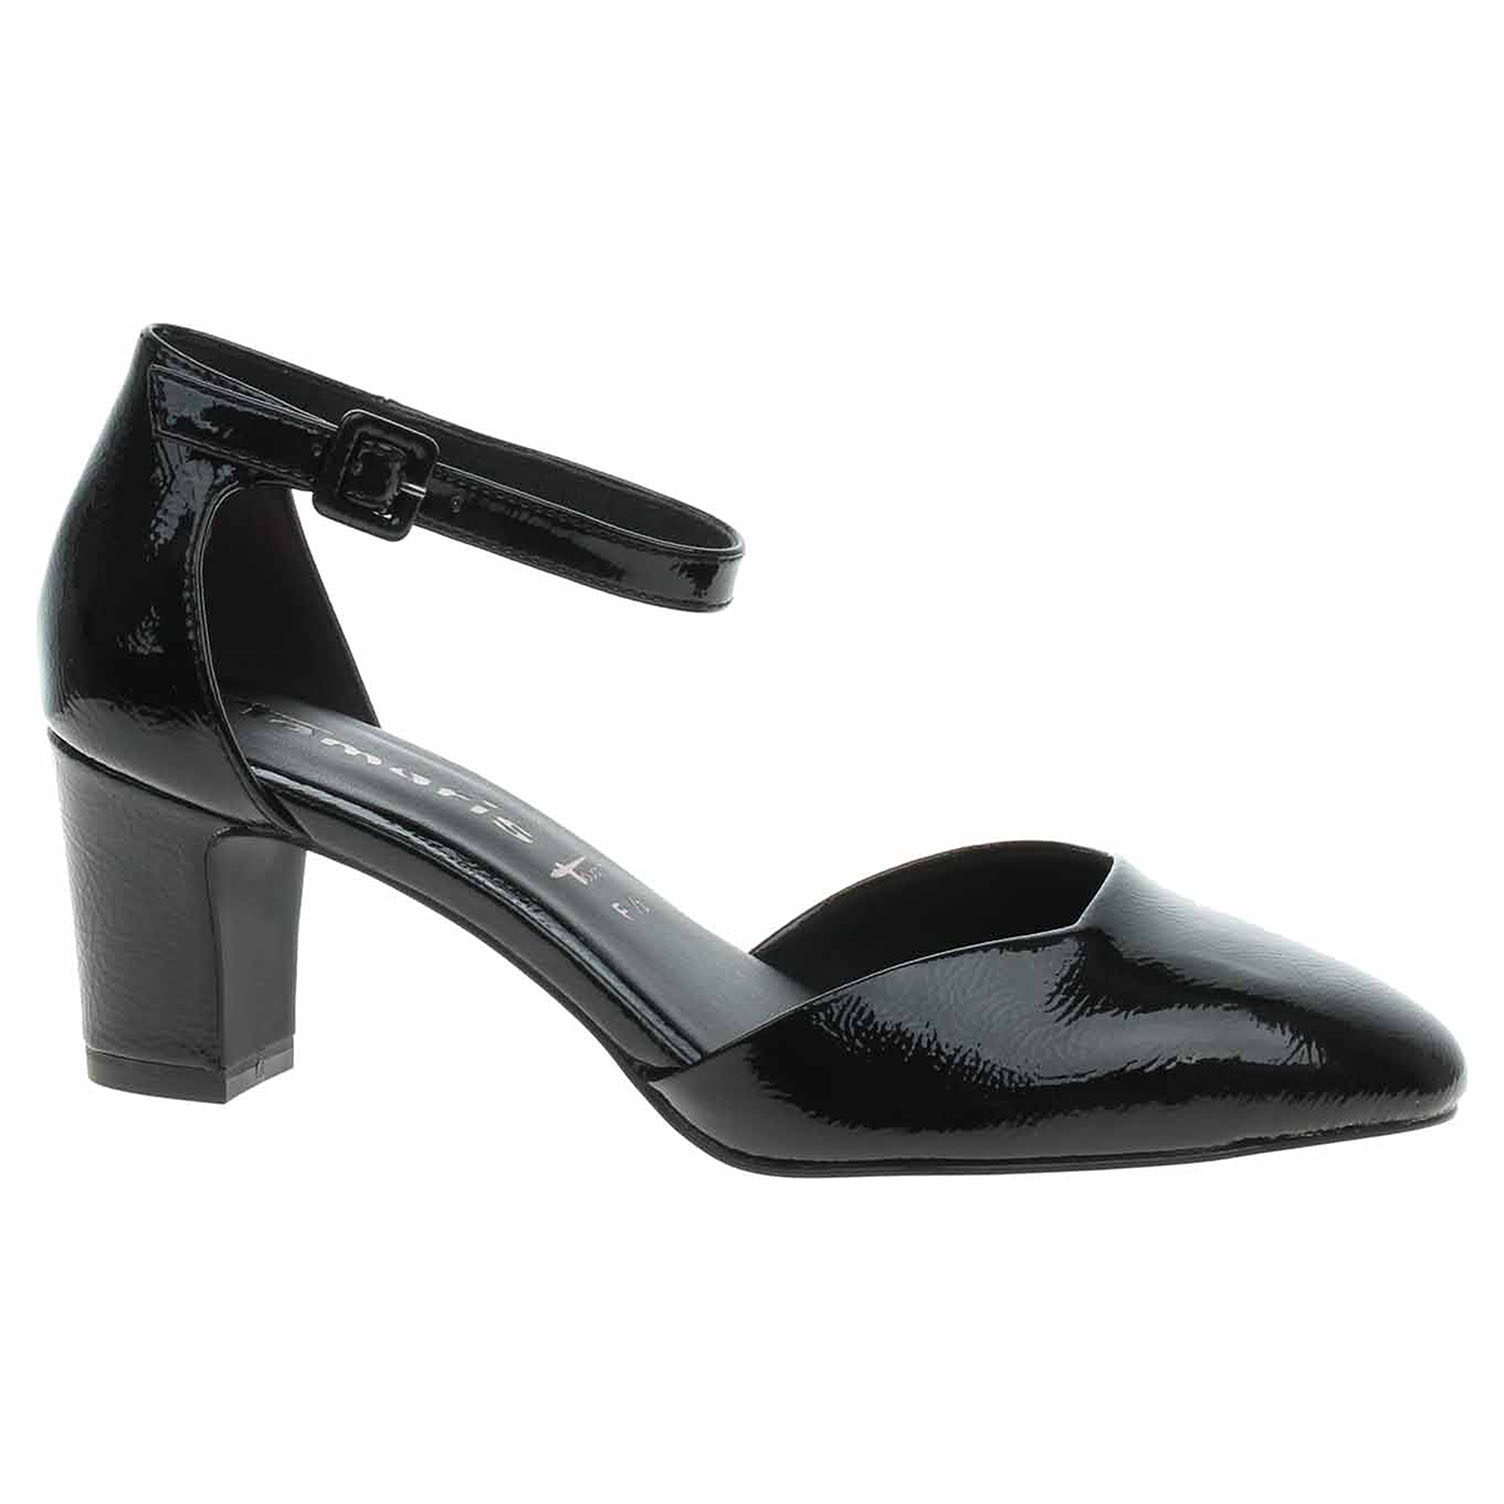 Dámská společenská obuv Tamaris 1-24432-41 black patent